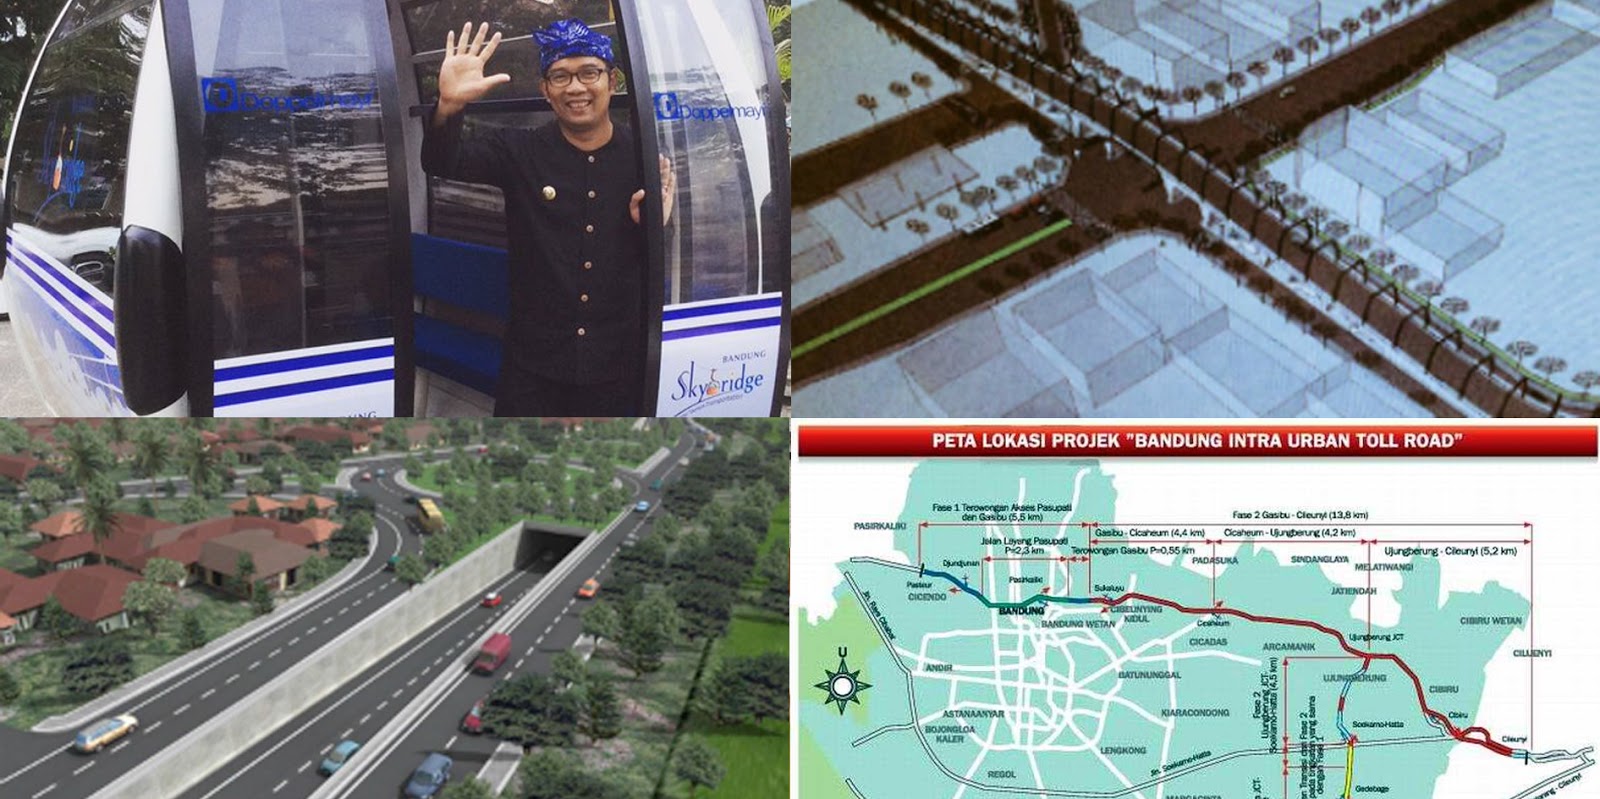 cable car Bandung terowongan cibiru jalan tol kota Bandung 